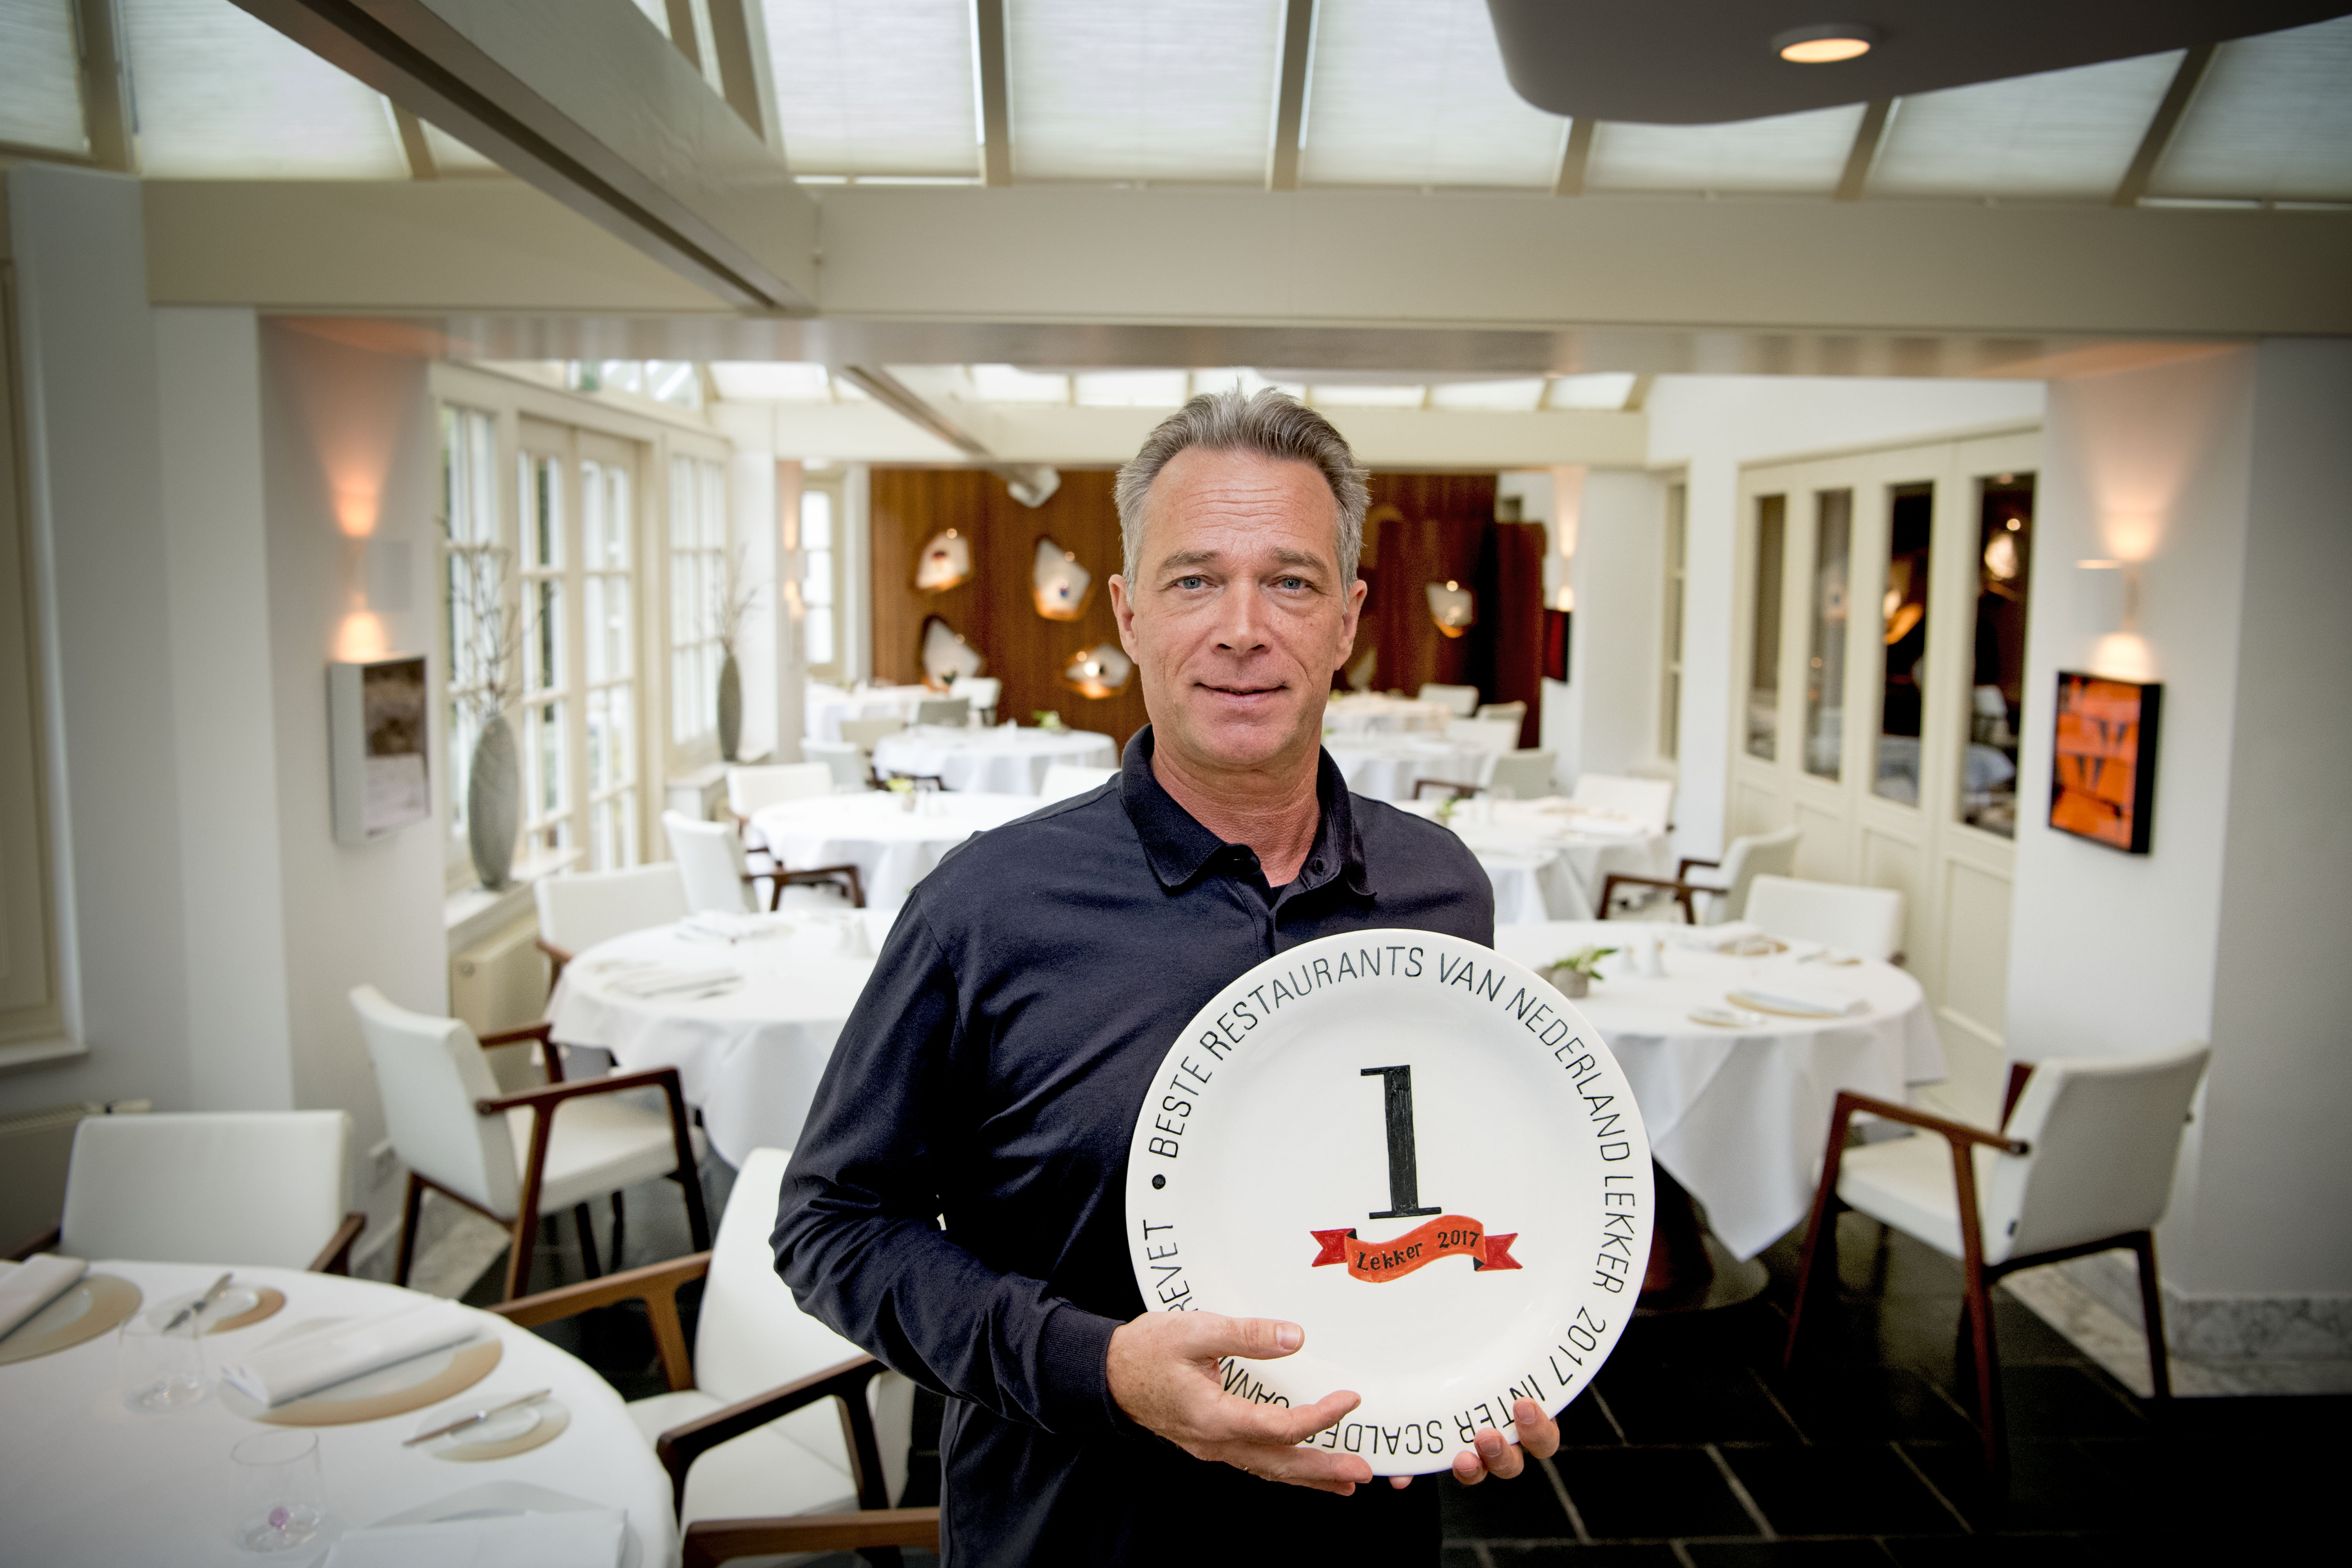 2016-10-24 13:33:33 KRUININGEN - Portret van chef-kok Jannis Brevet in zijn restaurant Inter Scaldes in Kruiningen. De eerste plaats in de Lekker500 is opnieuw gereserveerd voor de Zeeuwse superchef. ANP ROBIN UTRECHT